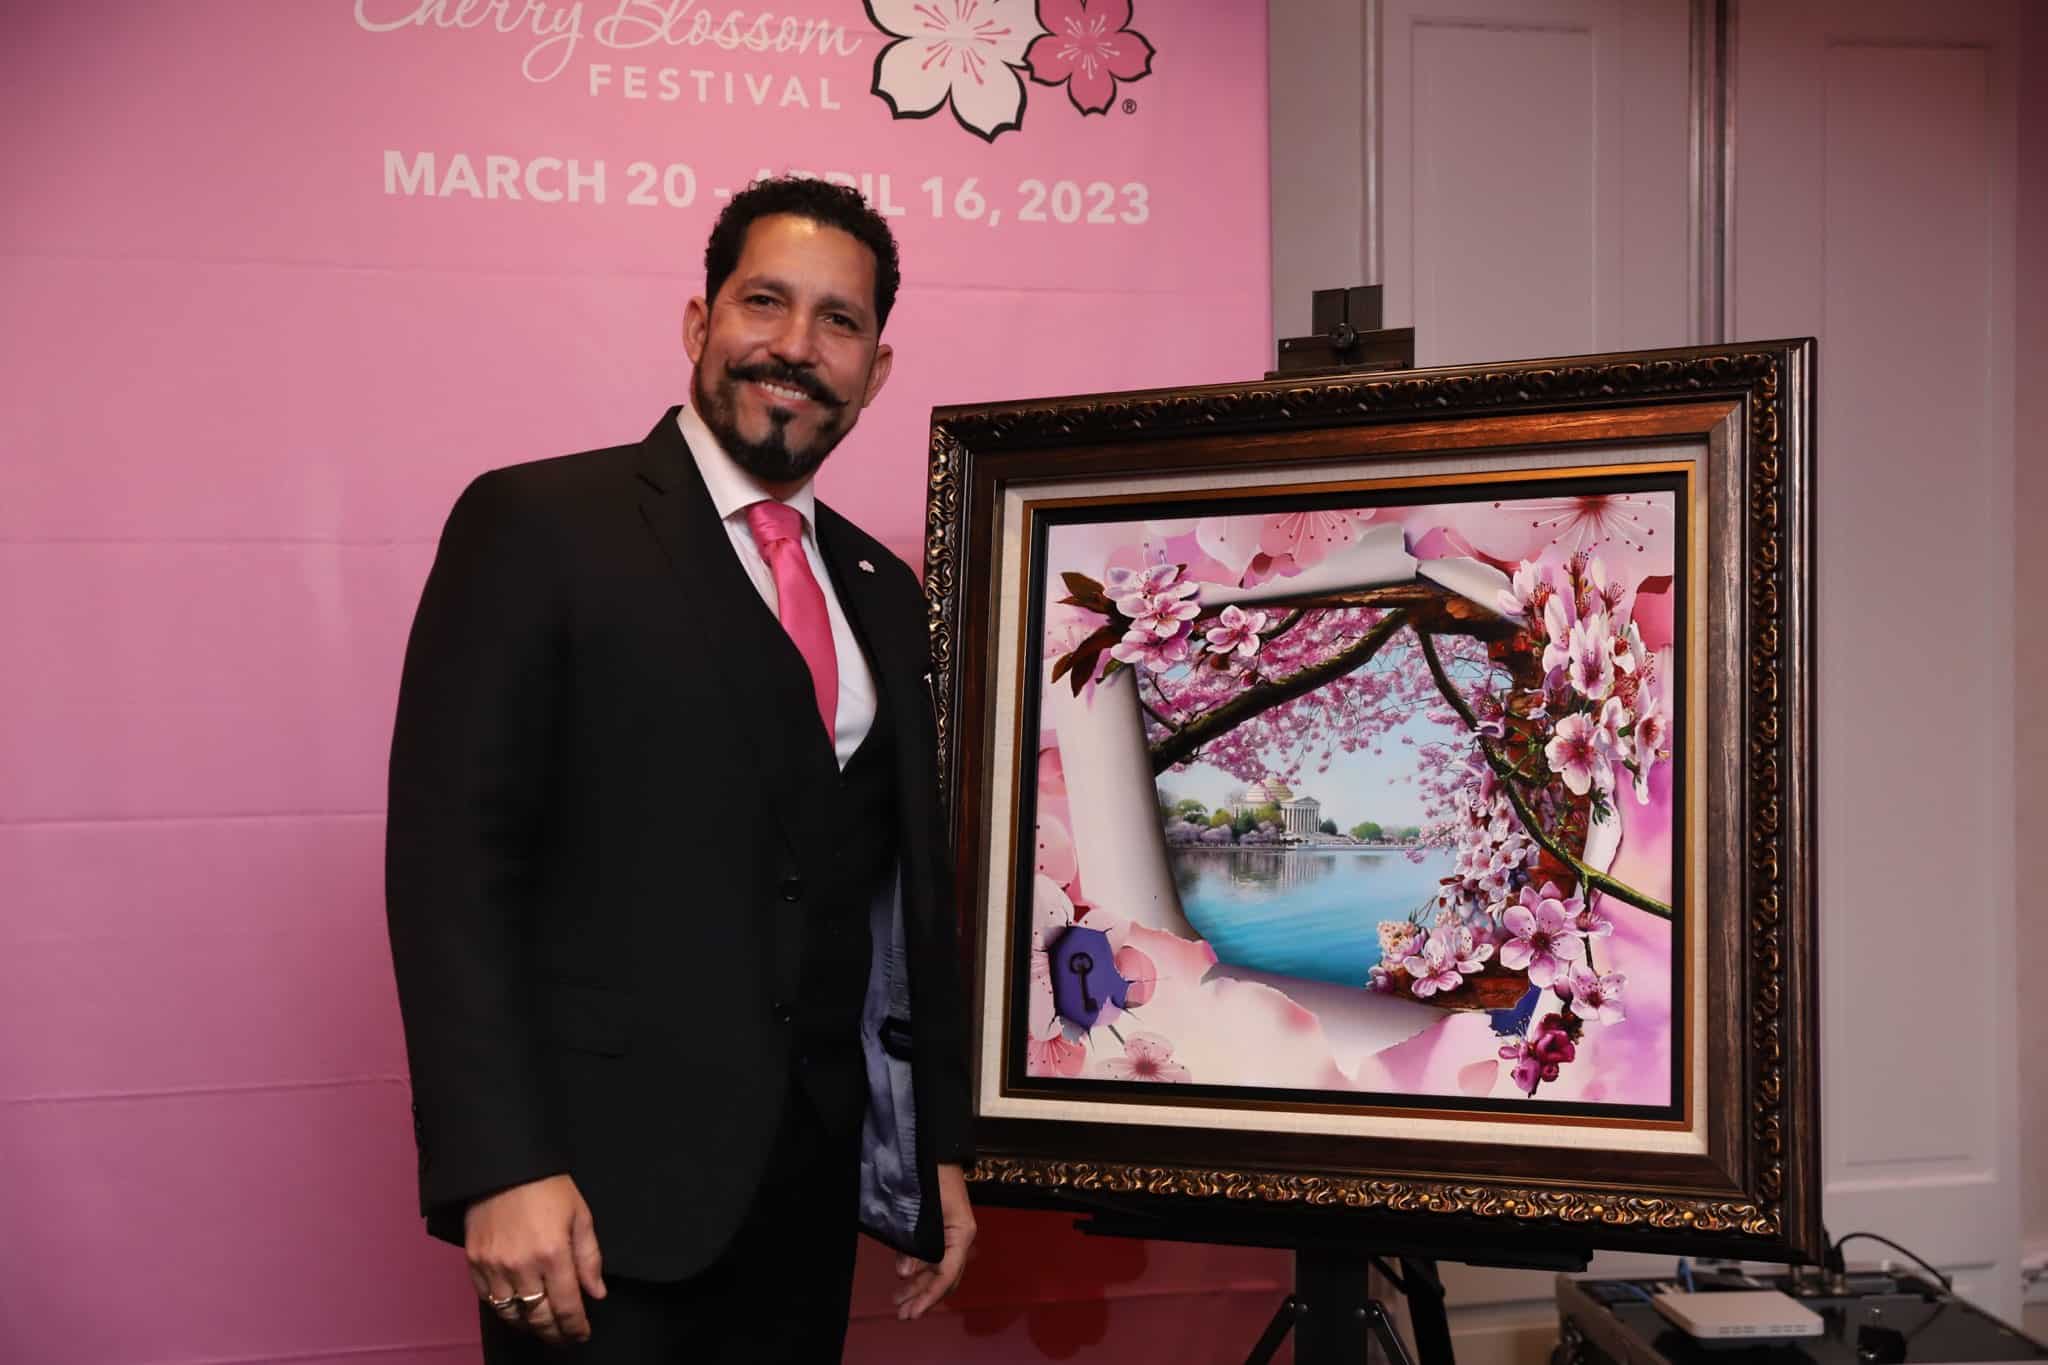 Official Festival Merchandise + Artwork - National Cherry Blossom Festival